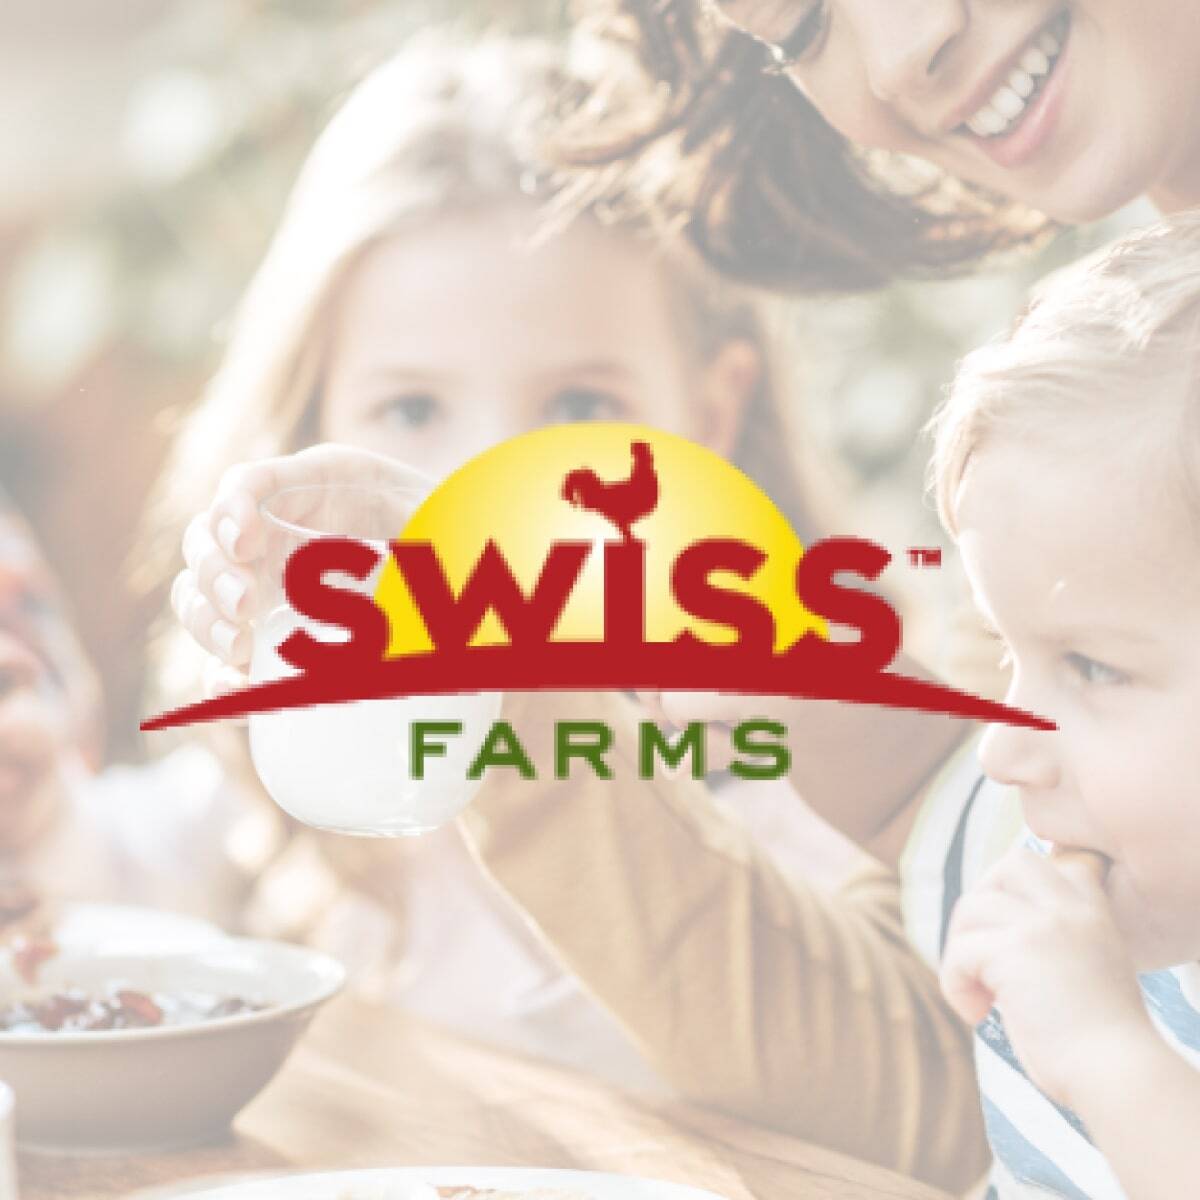 Square - Swiss Farms-min